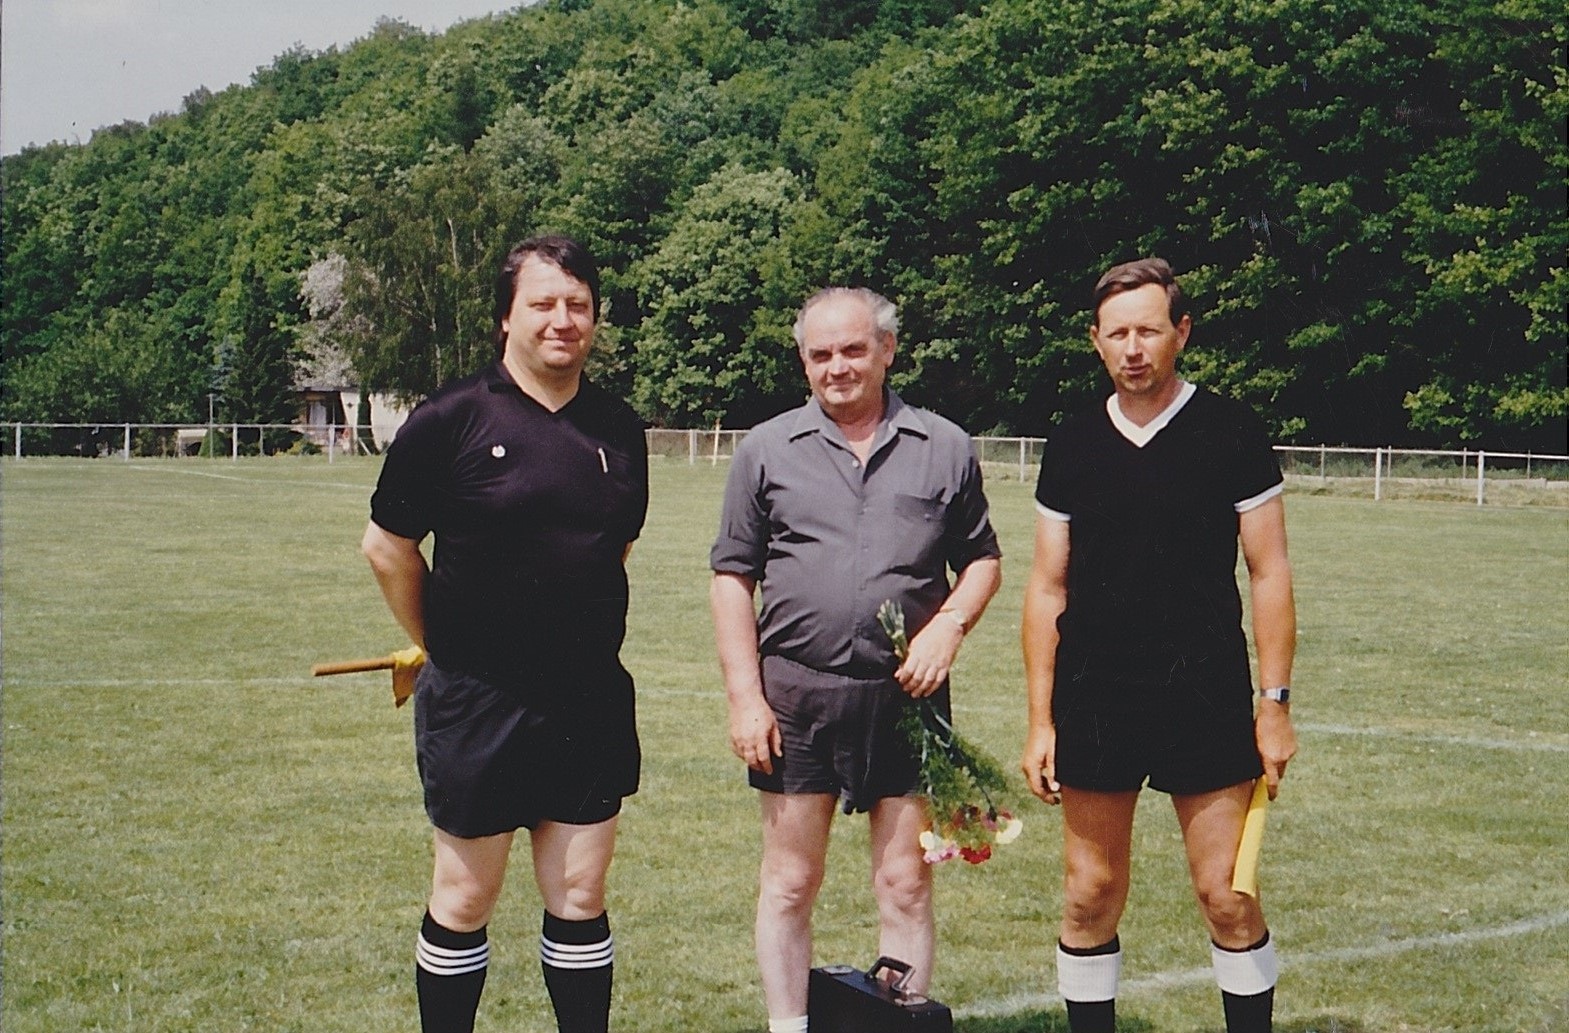 Schiedsrichter-Urgestein Gunter Leuschke (re.) mit seinem Kollektiv bei einem Spiel Anfang der 1990er Jahre. Foto: privat